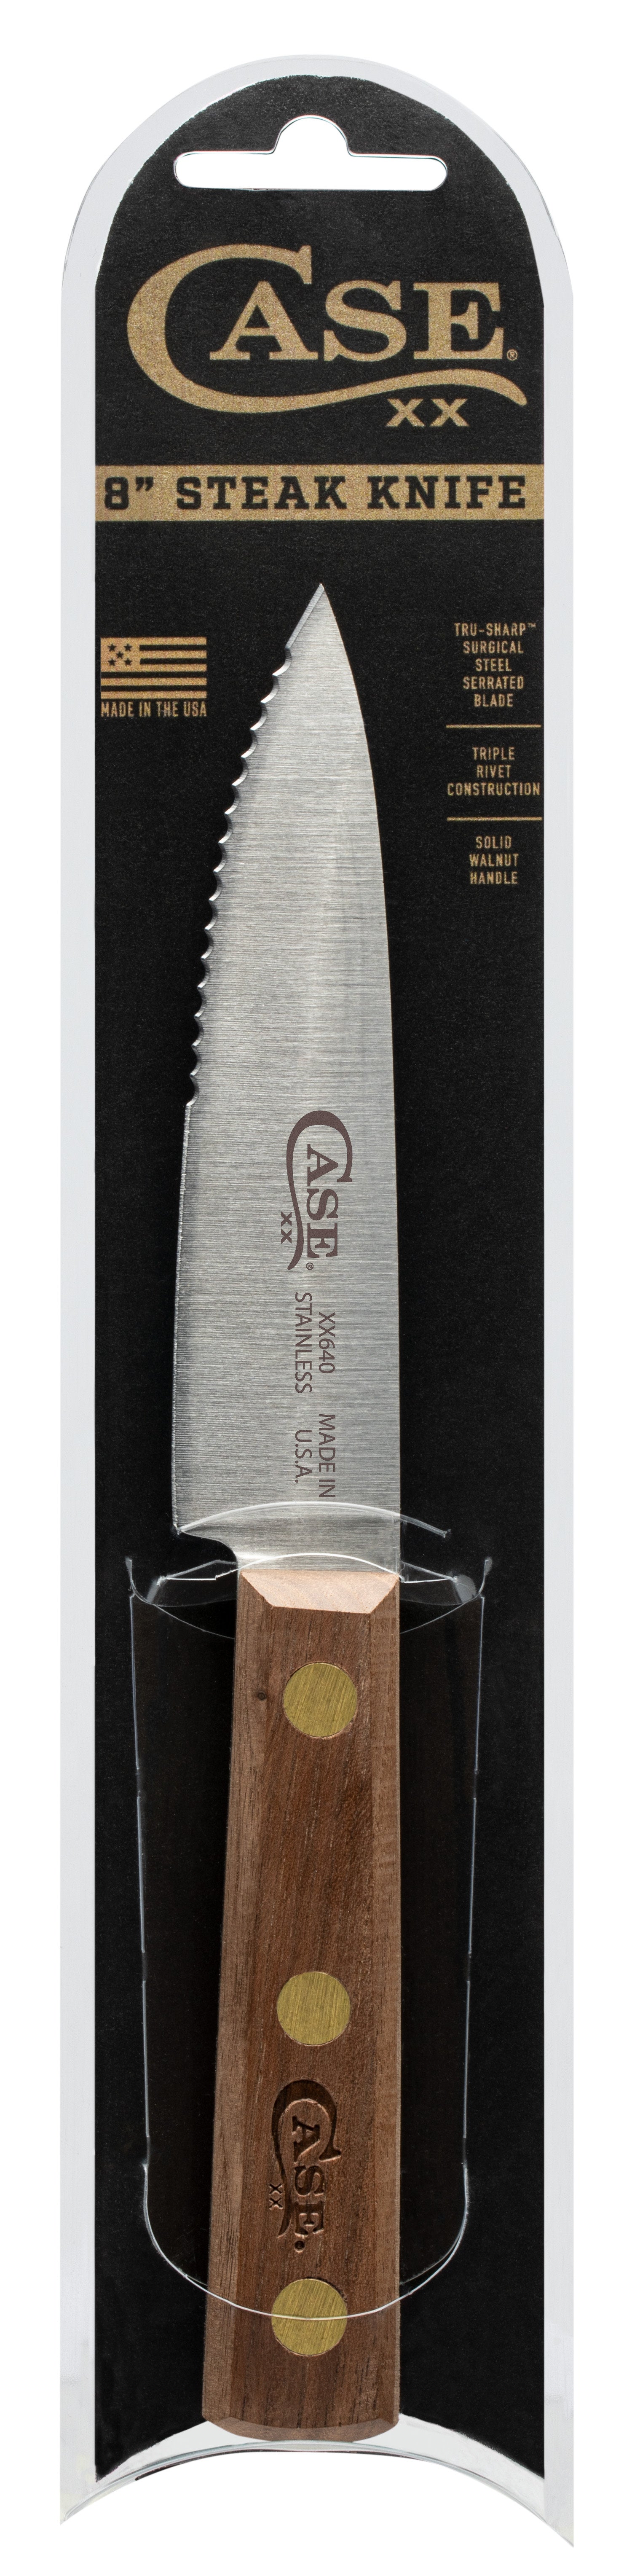 VINTAGE 8 Piece CASE Steak Knife Set LIKE MEW for Sale in Scottsdale, AZ -  OfferUp